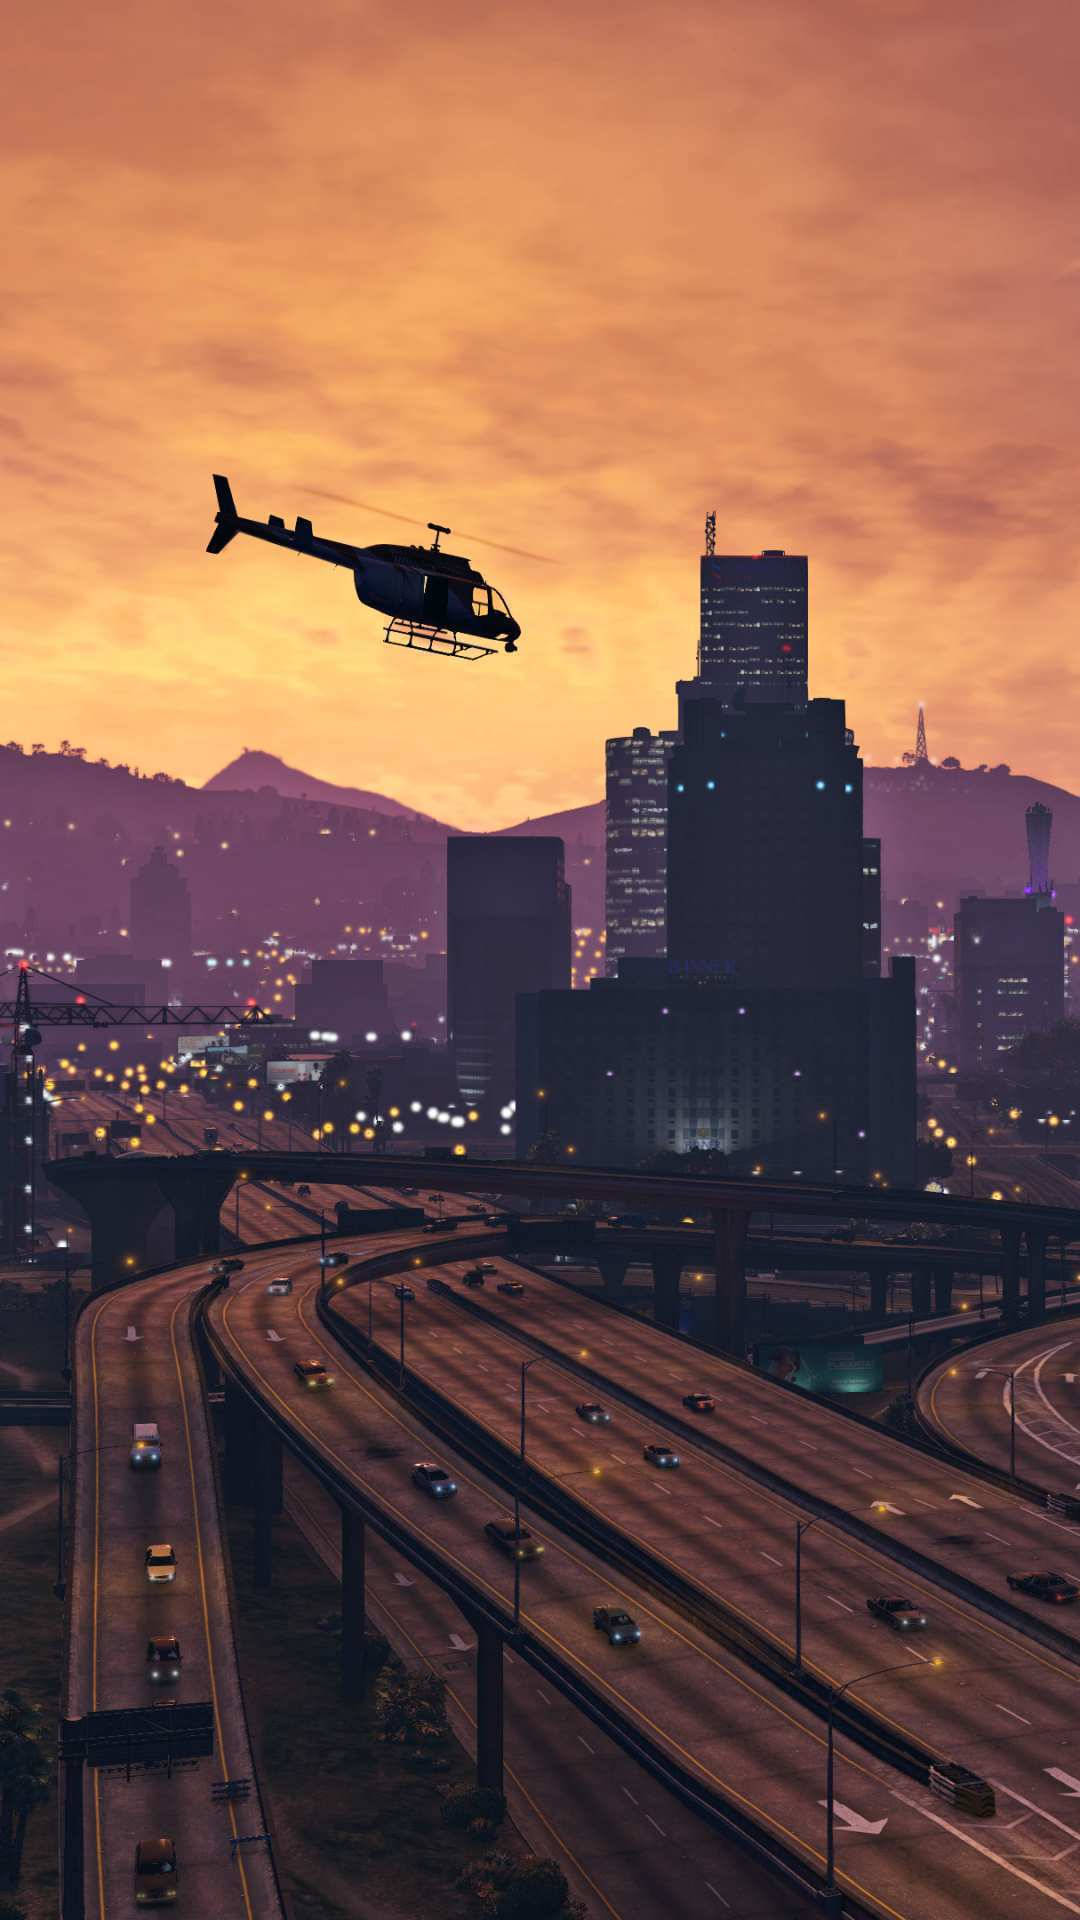 Gta 5 Phone Chopper In City Background